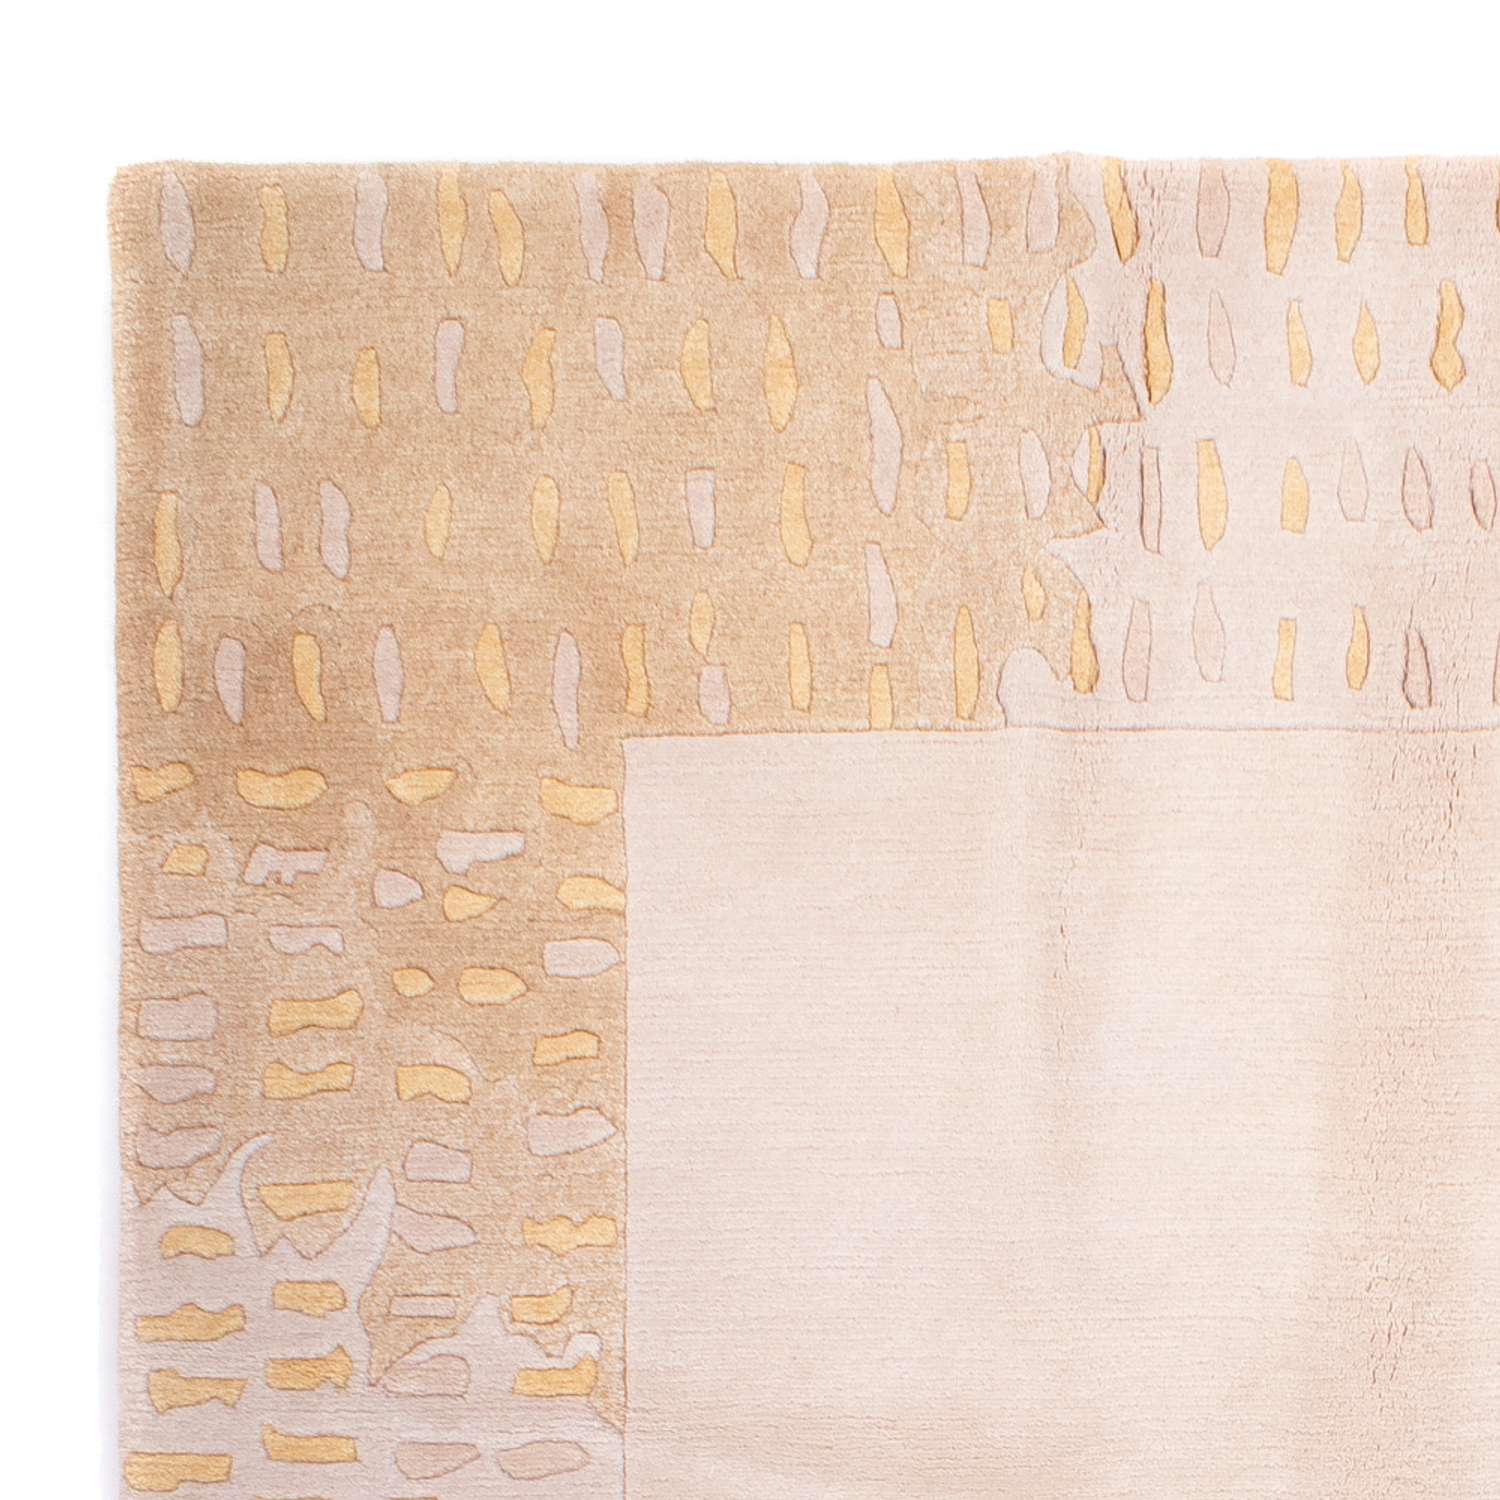 Nepal mattan - Kungliga - 240 x 170 cm - beige